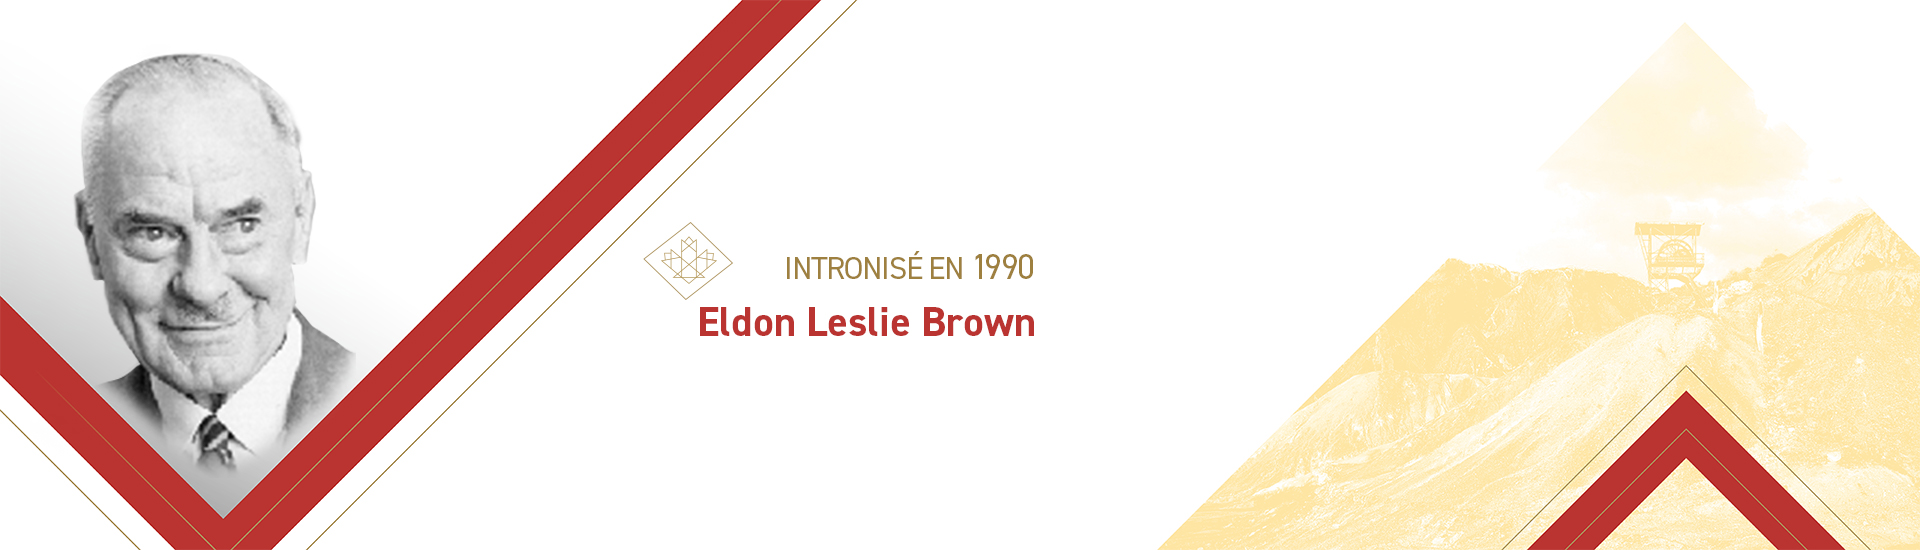 Eldon Leslie Brown (1900-1998)